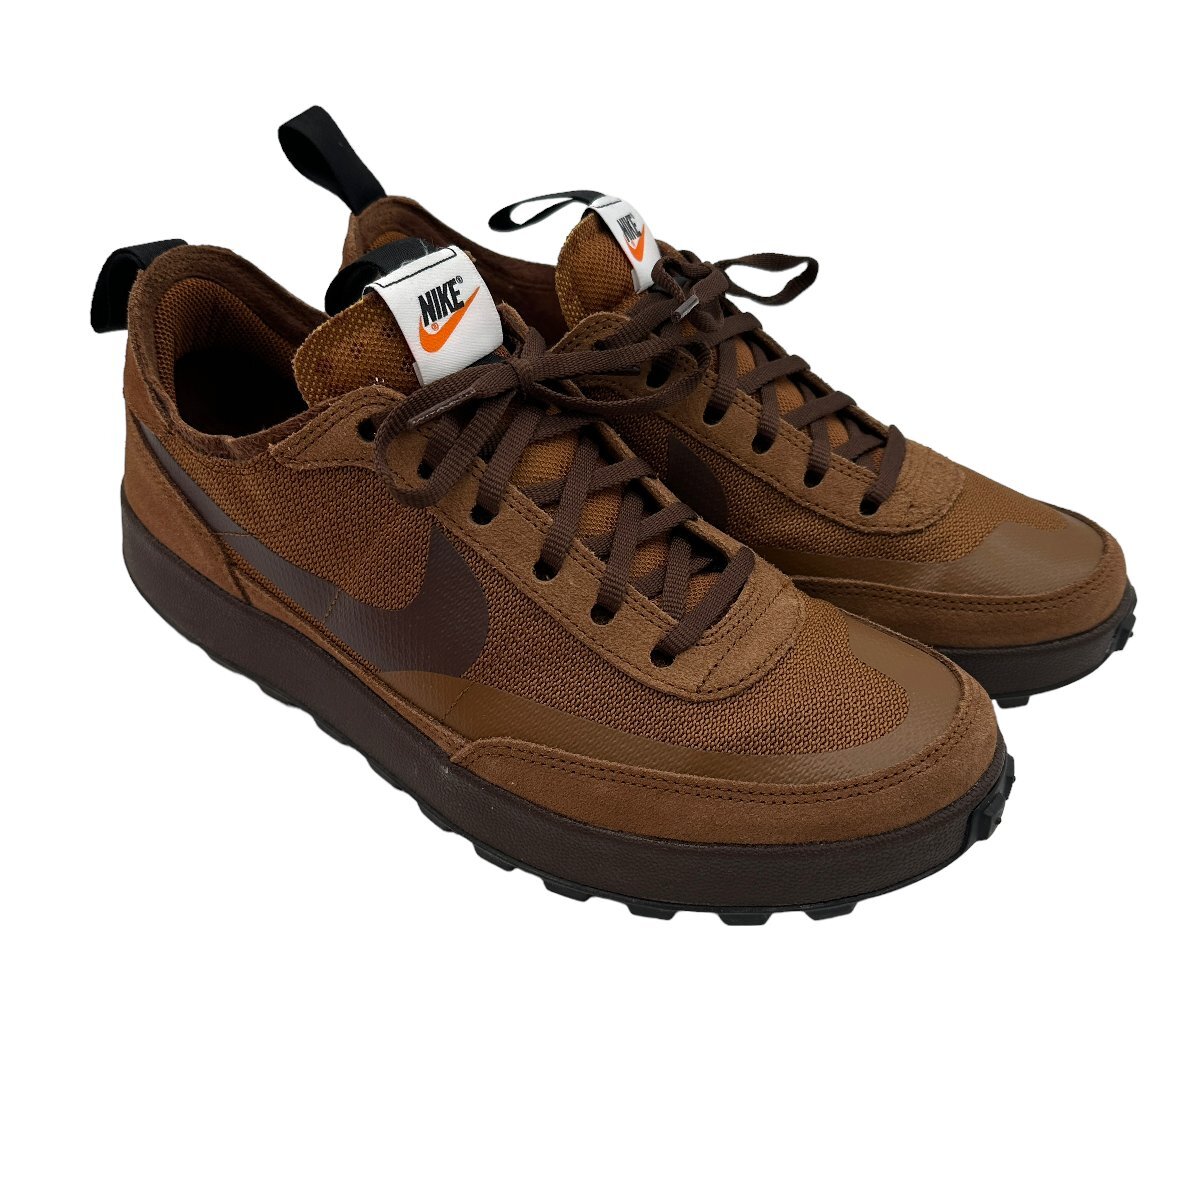 A807●美品●NIKE Tom Sachs Nike Craft トムサックス ブラウン パーパス US10.5●28.5cmの画像3